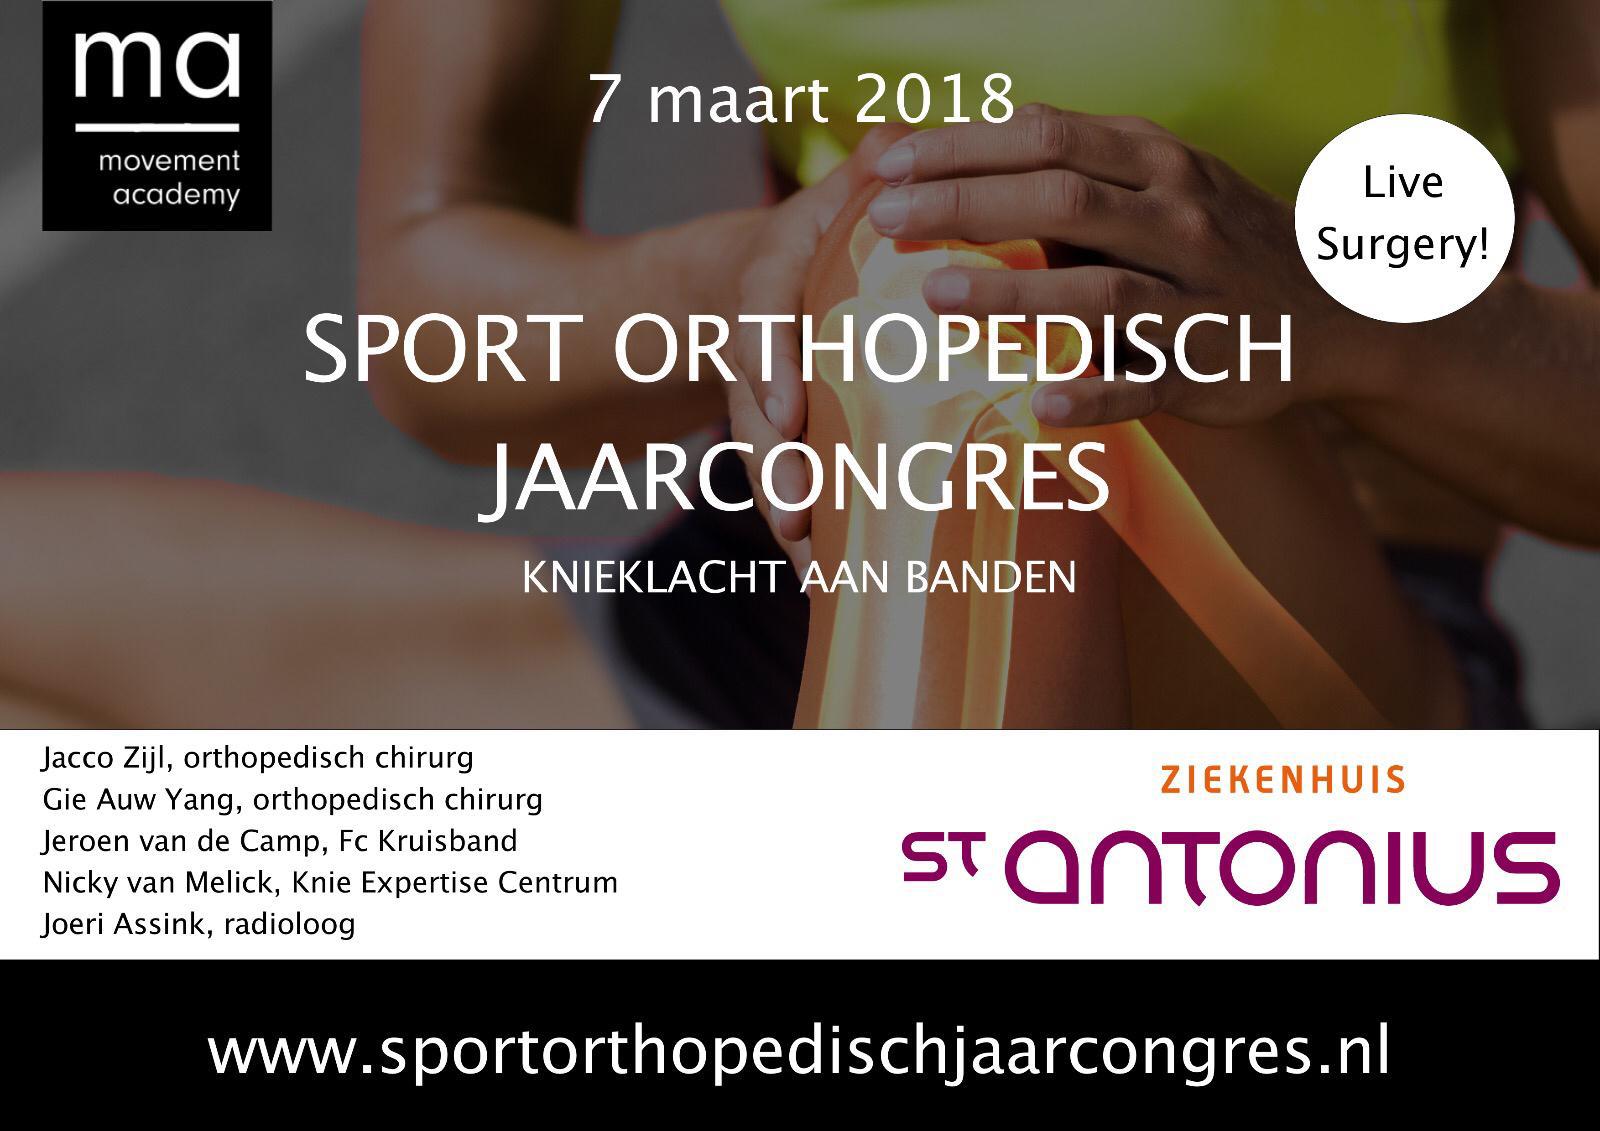 Sport Orthopedisch Jaarcongres - "Knieklacht aan banden"